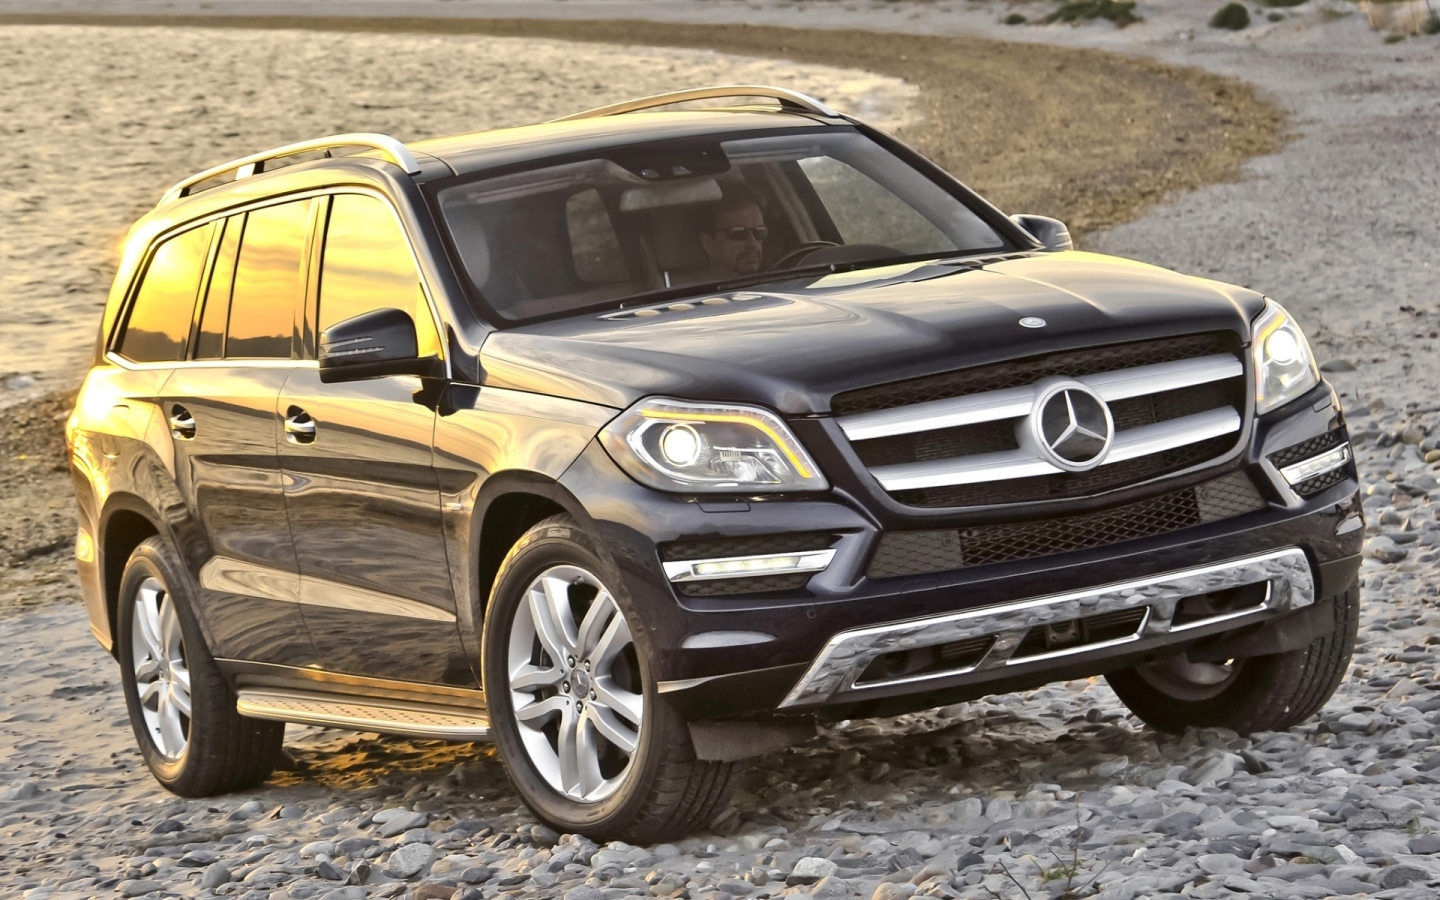 Mercedes-Benz GL 450 for 1440 x 900 widescreen resolution